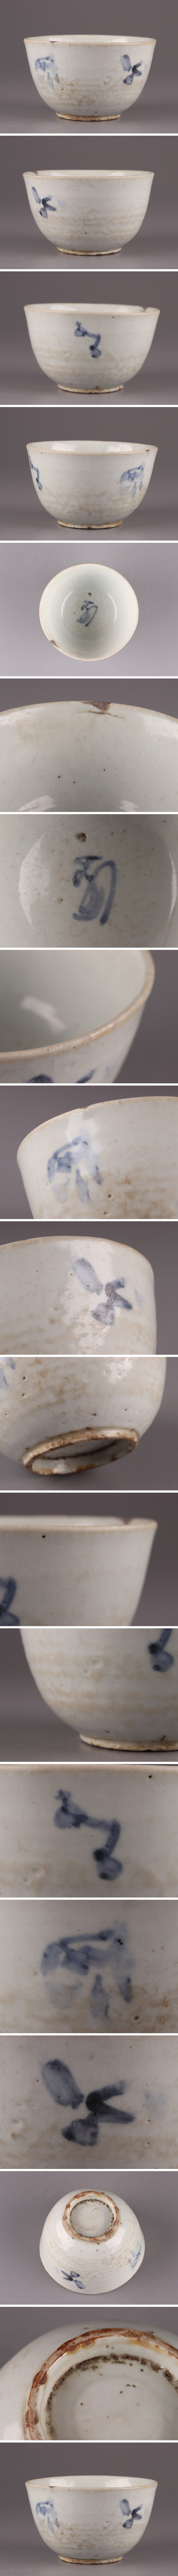 通販銀座古美術 朝鮮古陶磁器 李朝 白磁 染付 茶碗 時代物 極上品 初だし品 4180 李朝